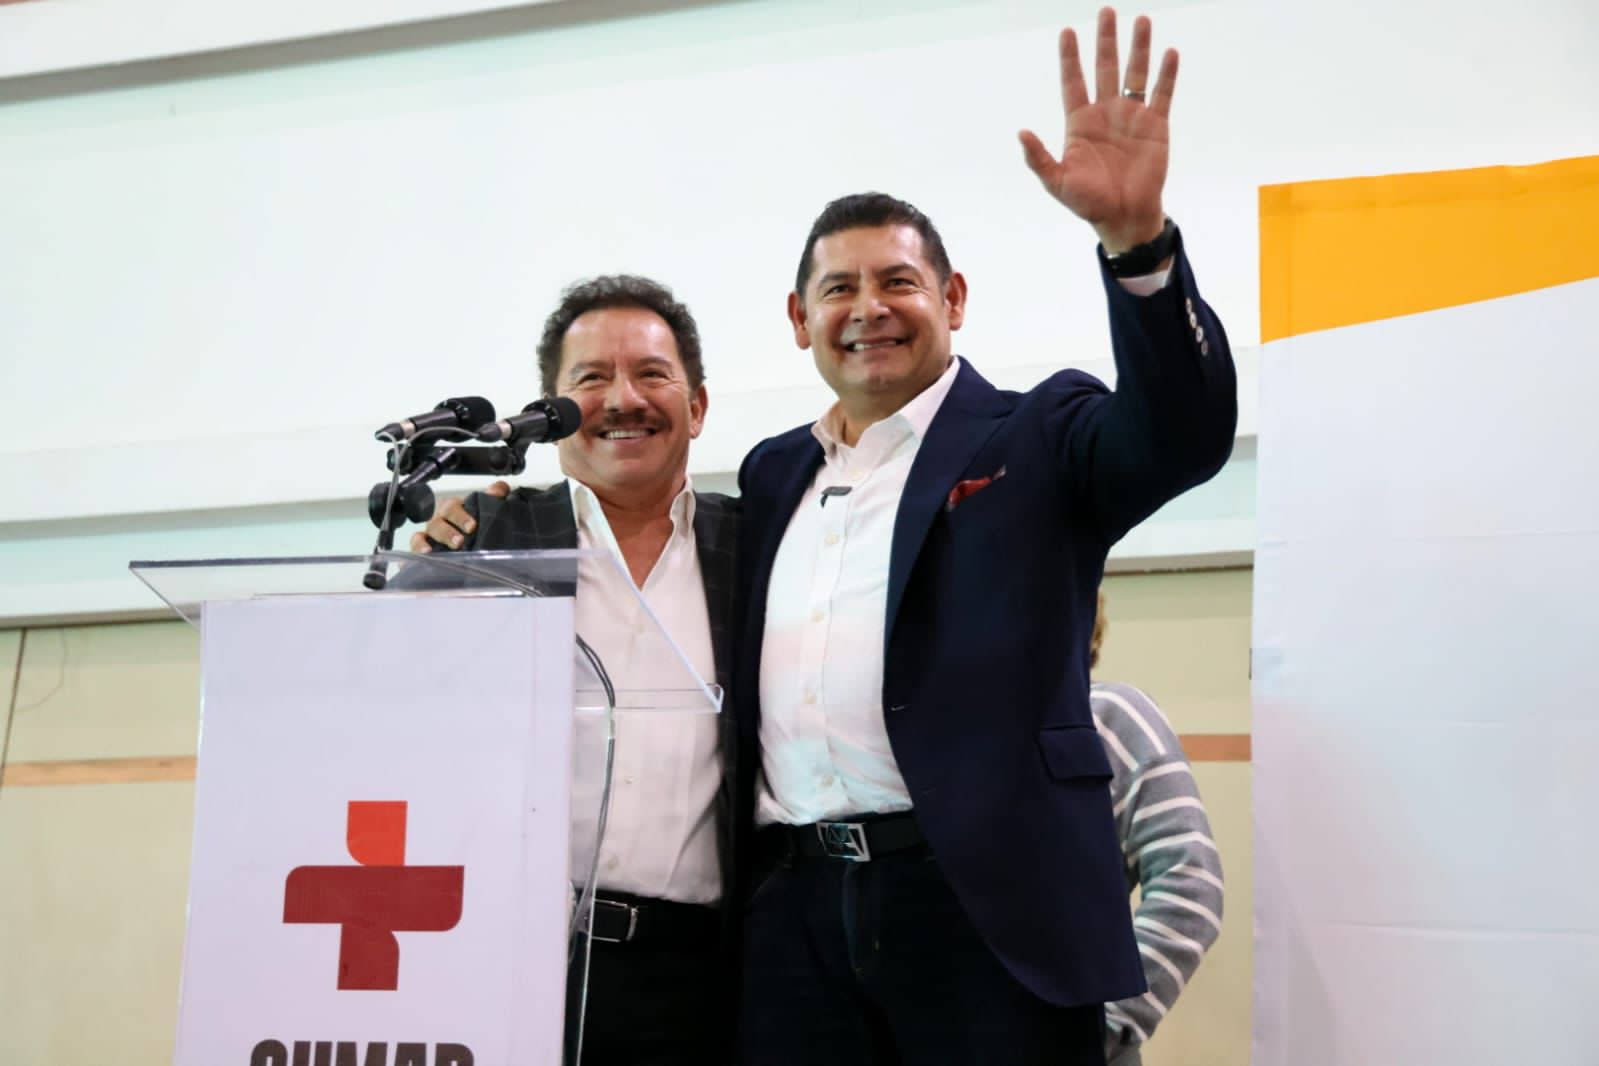 Alianza estratégica entre IMT, Nacho Mier y Alejandro Armenta para transformar Puebla. Diagnóstico social y proyectos para el bienestar